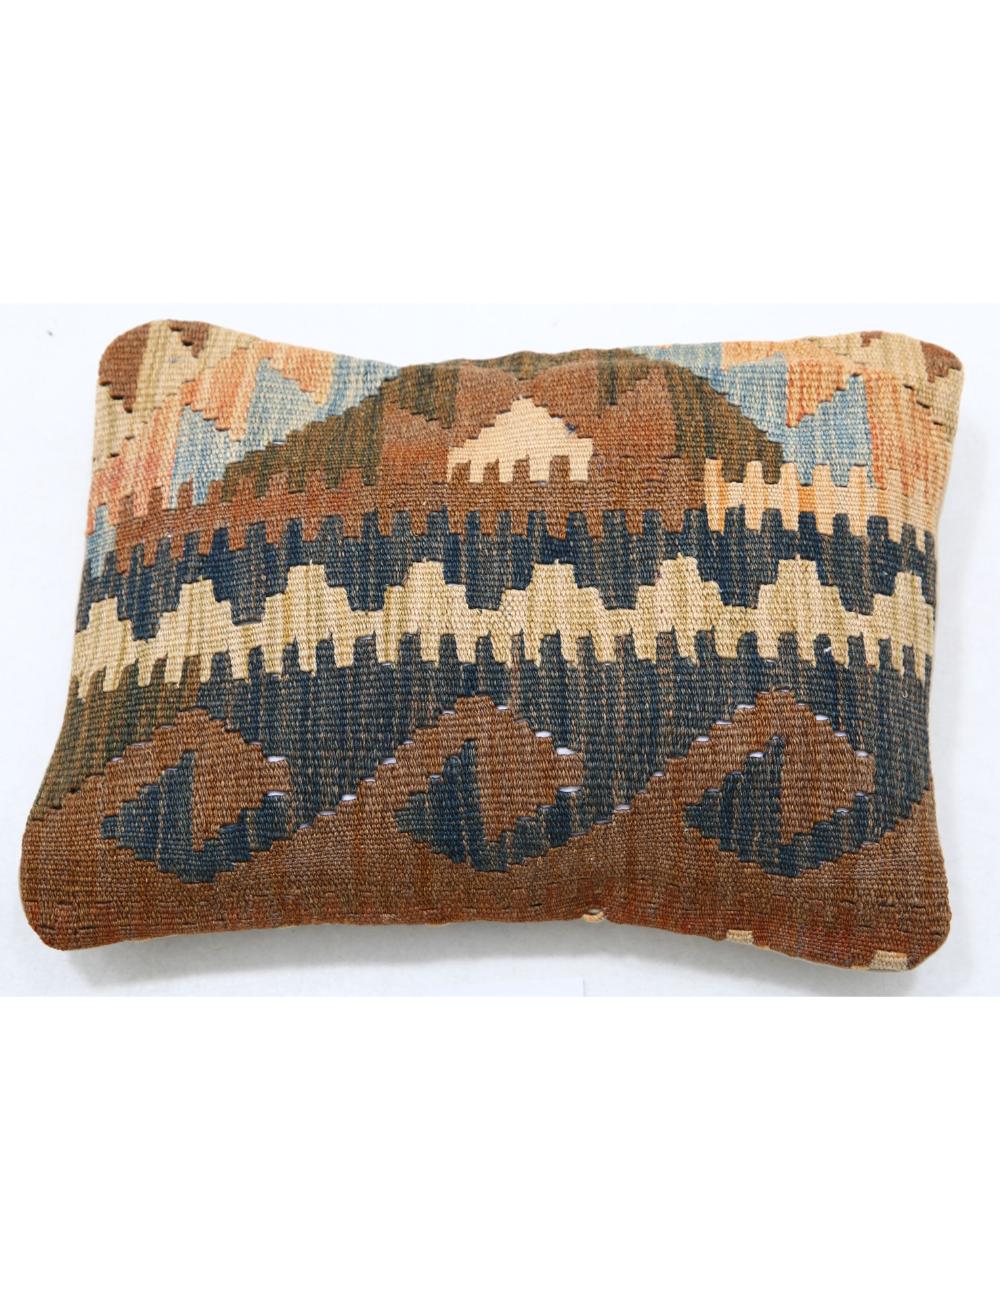 Hand Woven Tribal Multi Color Geometric Wool Pillow - 1&#39;0&#39;&#39; x 1&#39;5&#39;&#39; Arteverk Arteverk Rugs